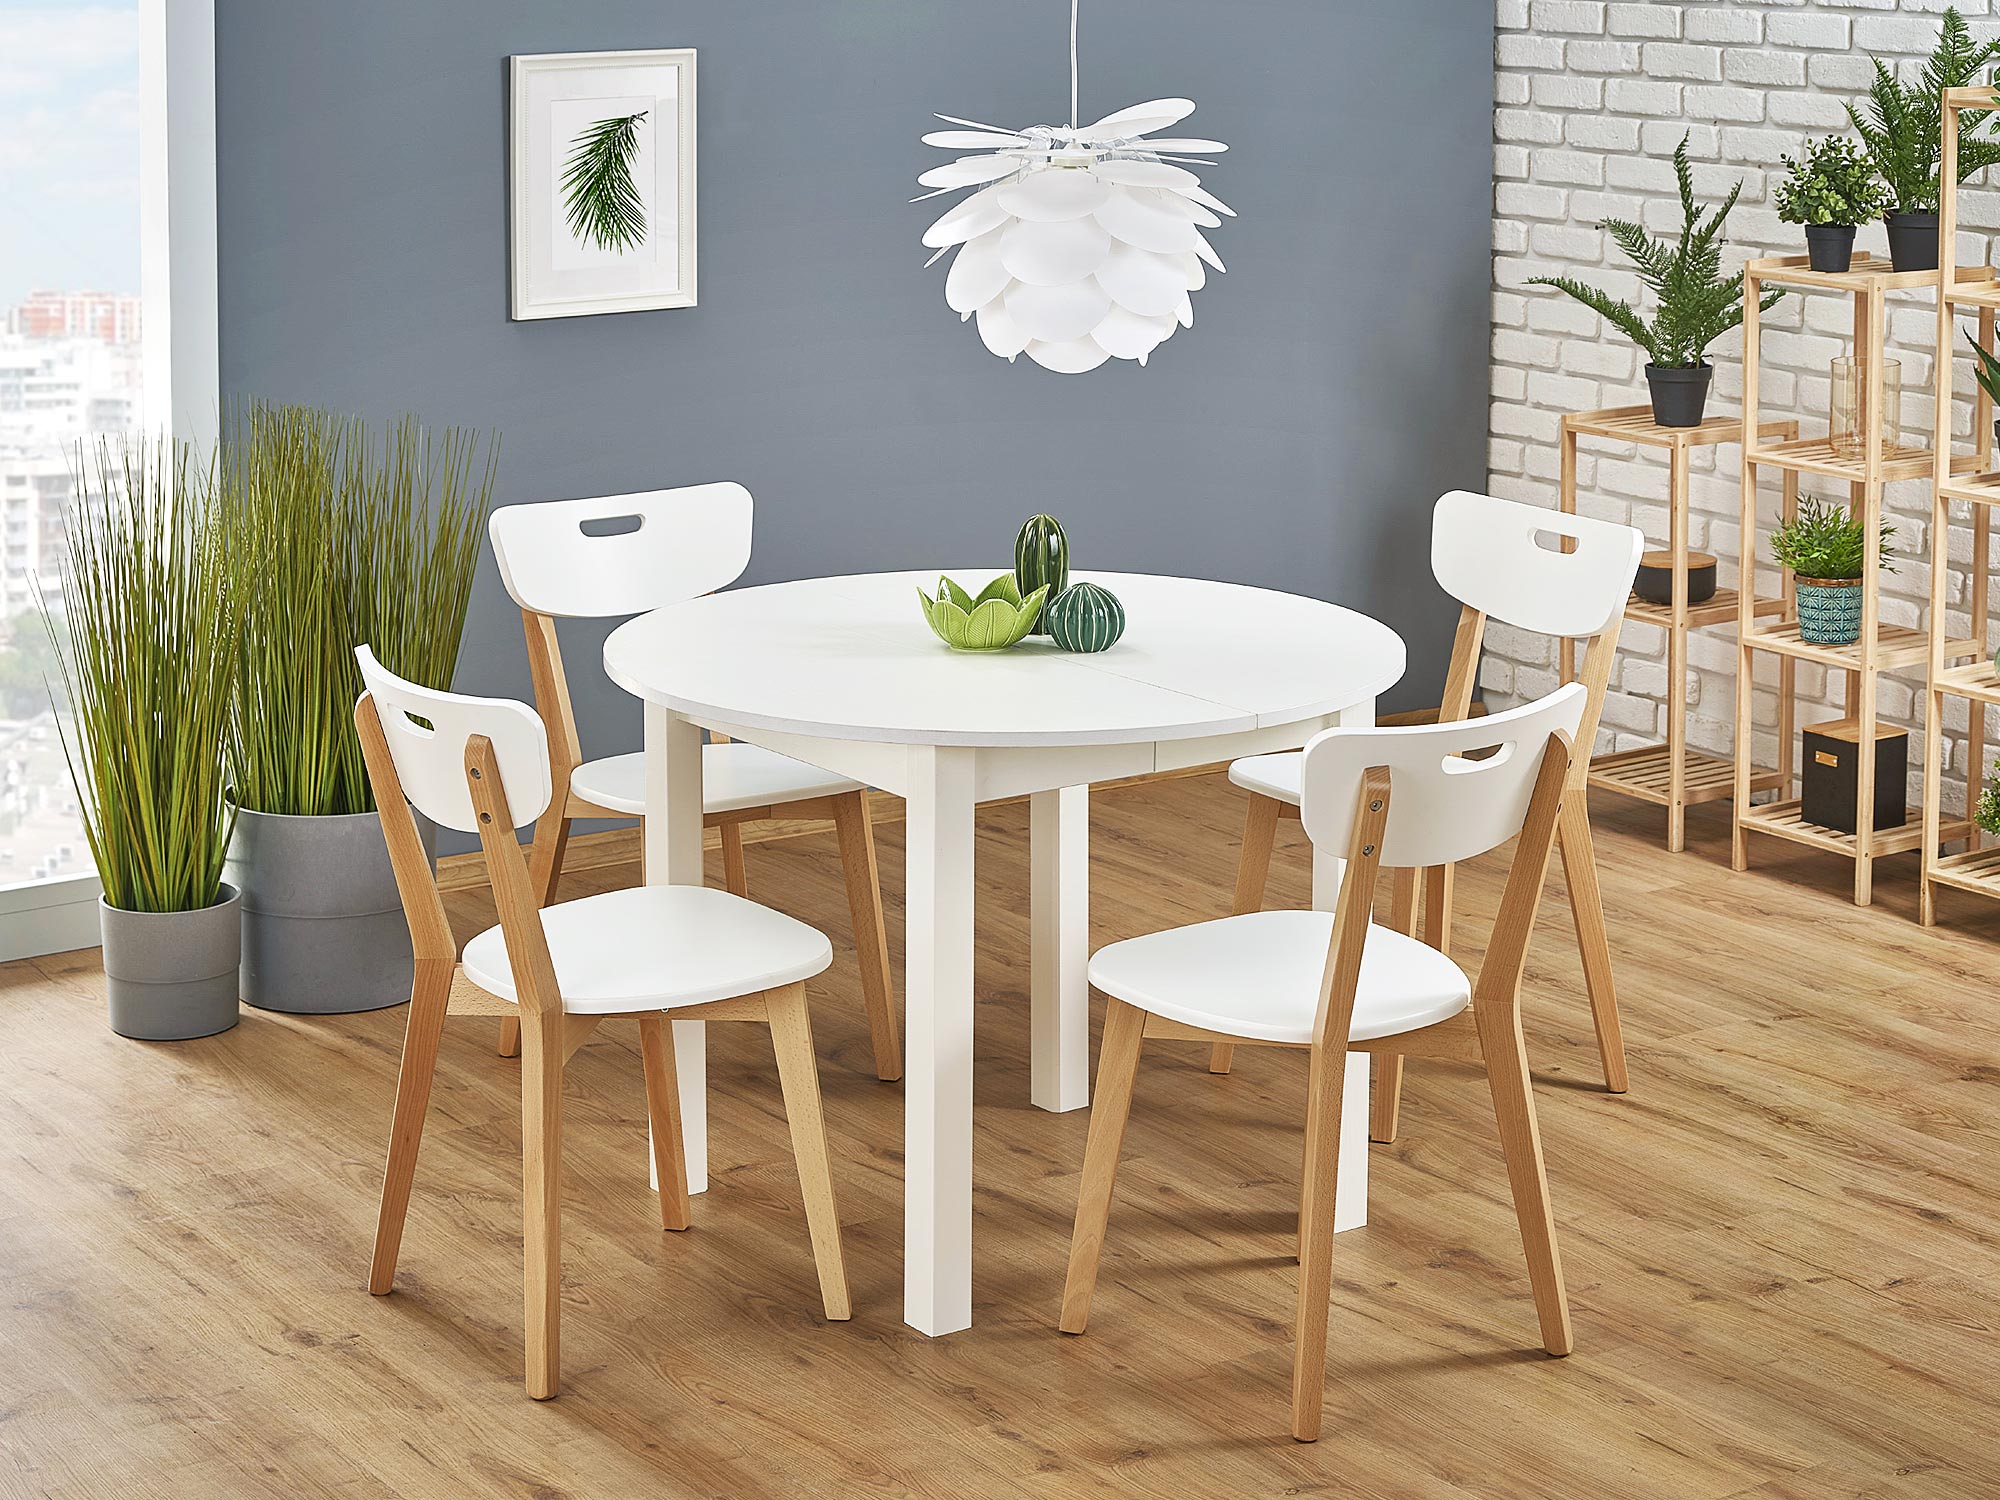 Krzesła kuchenne – jakie wybrać, by były wygodne i pasowały do wnętrza